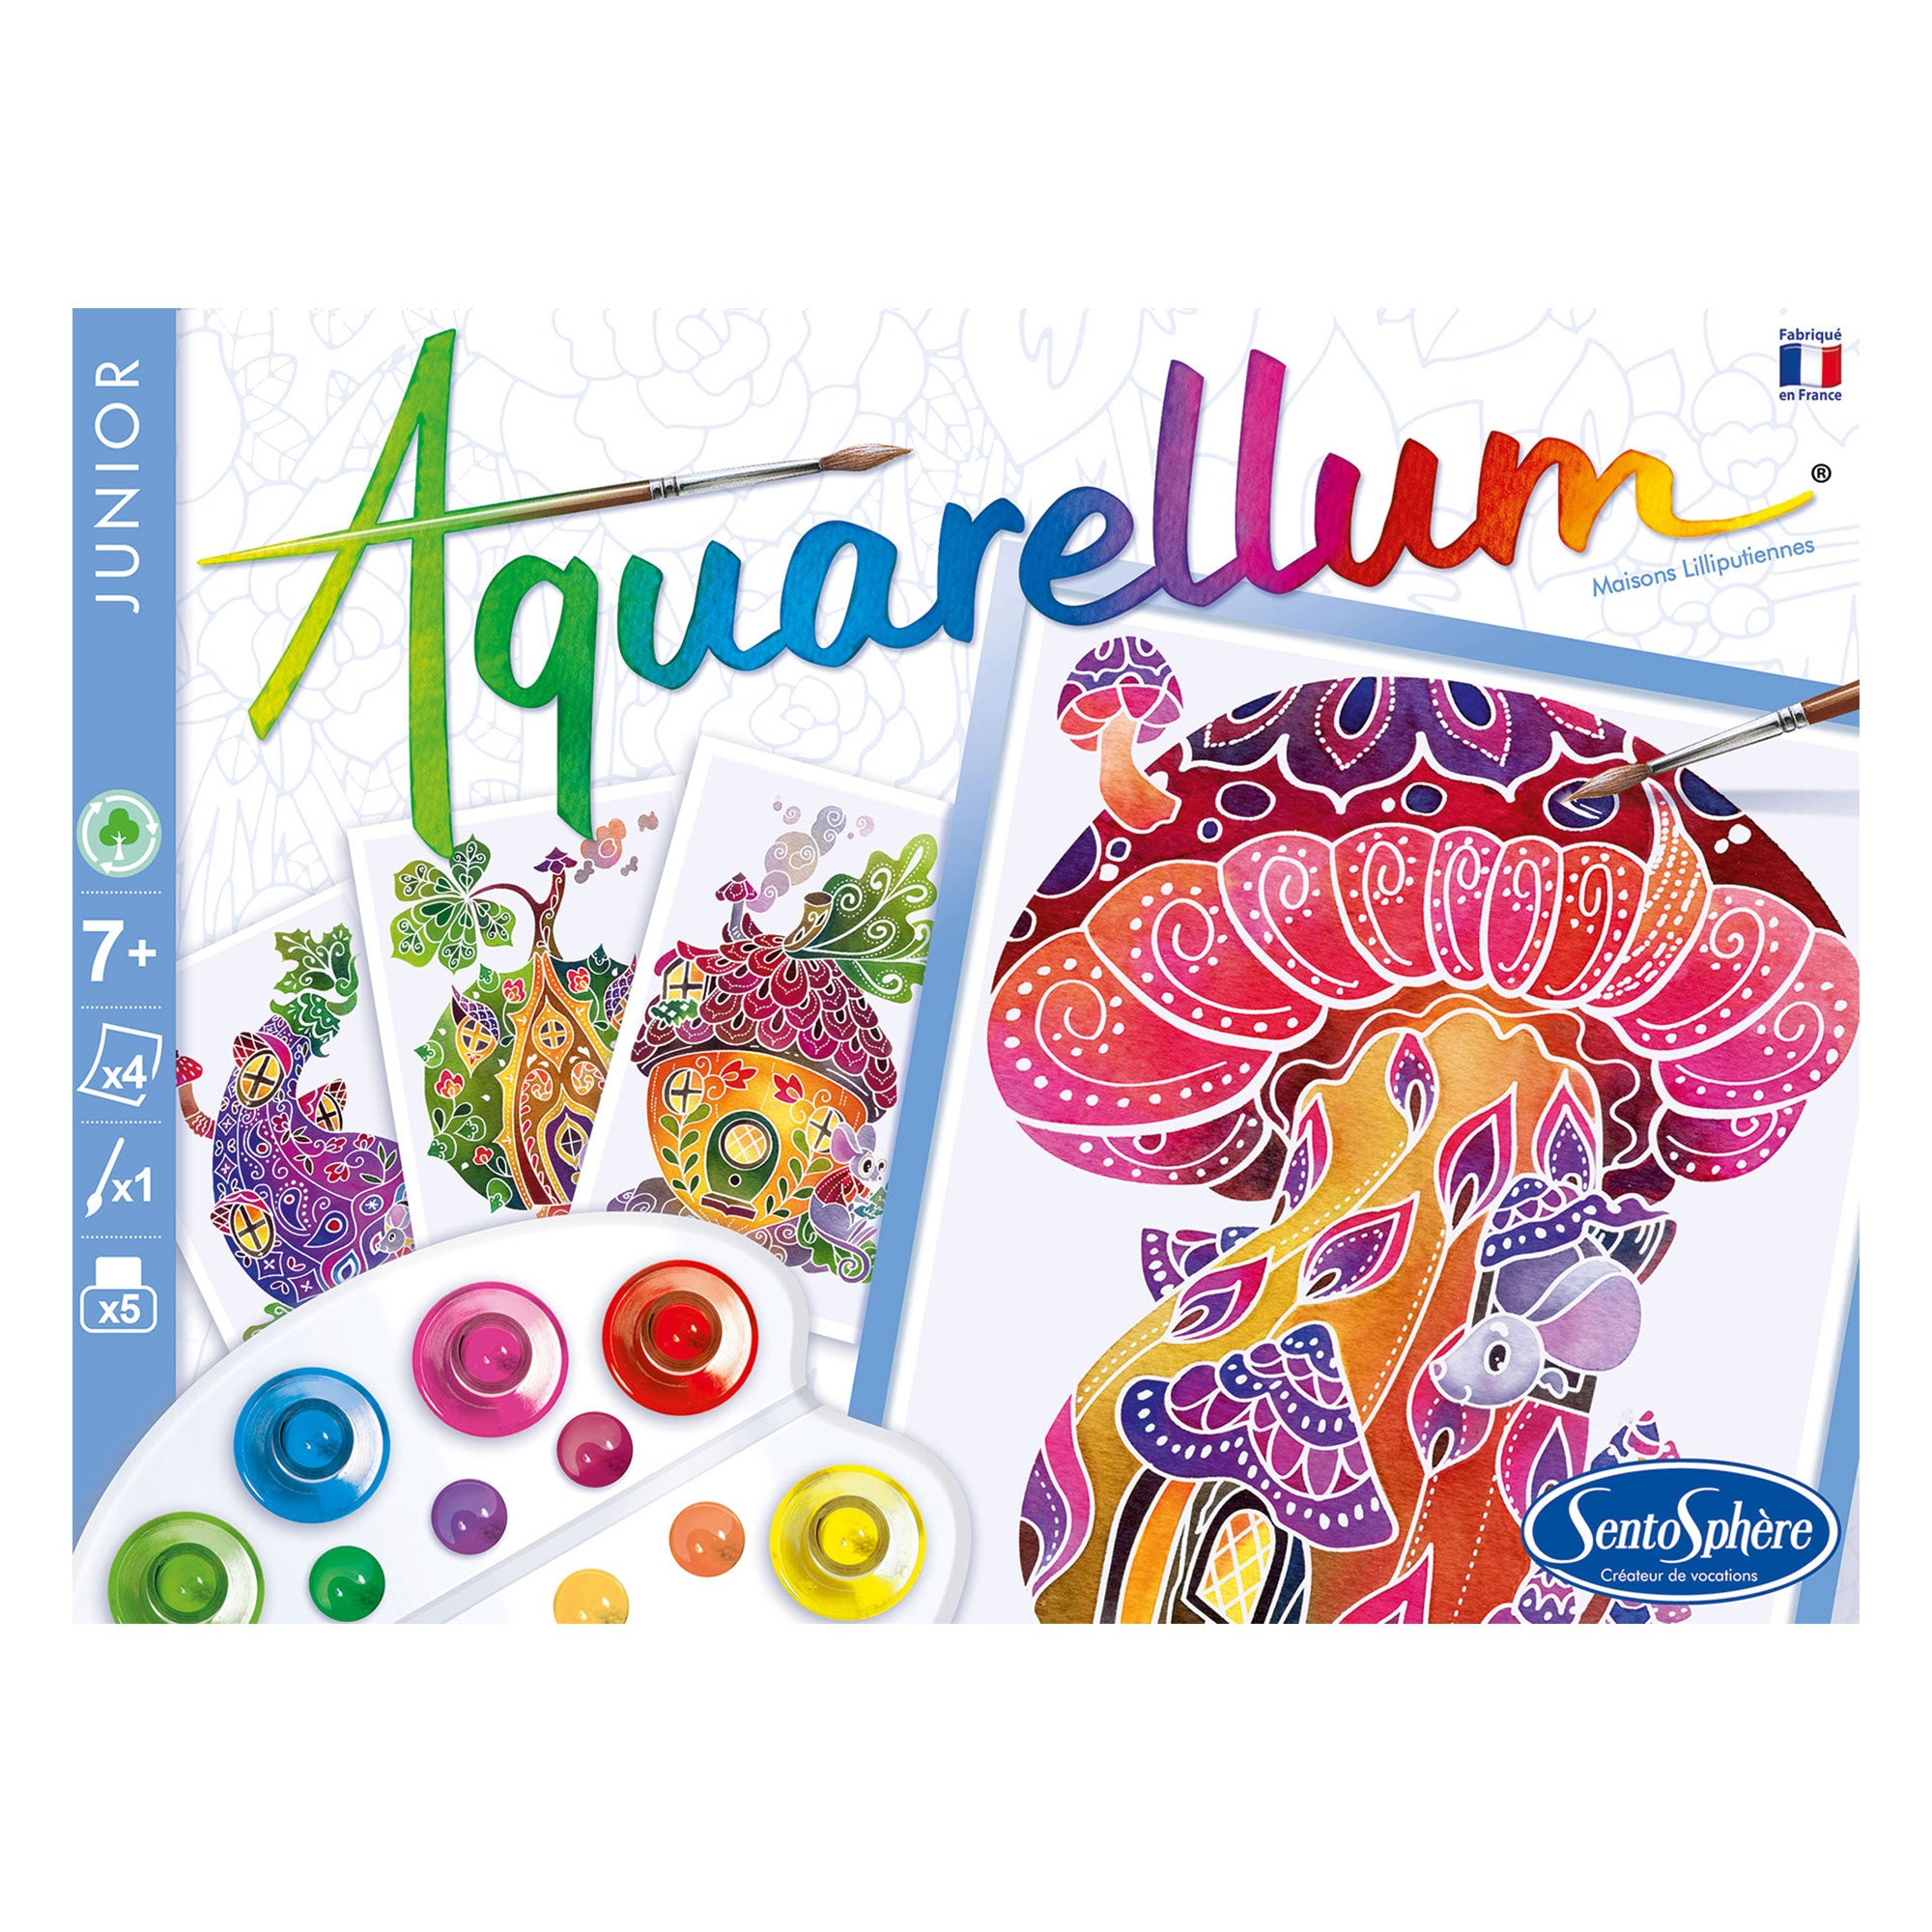 Coffret peinture Aquarellum junior - maisons lilliputiennes